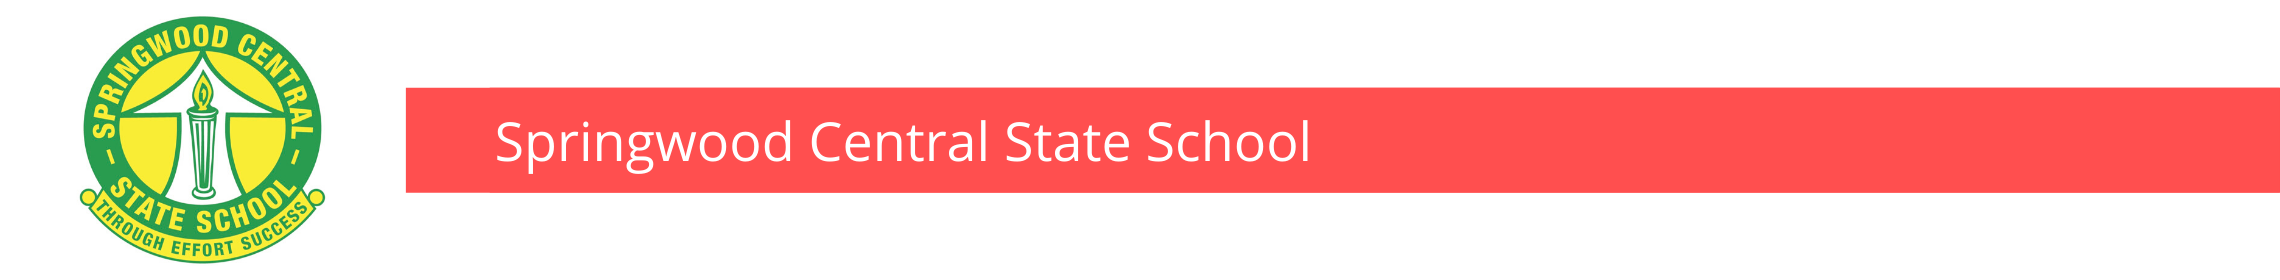 Springwood Central State School Banner